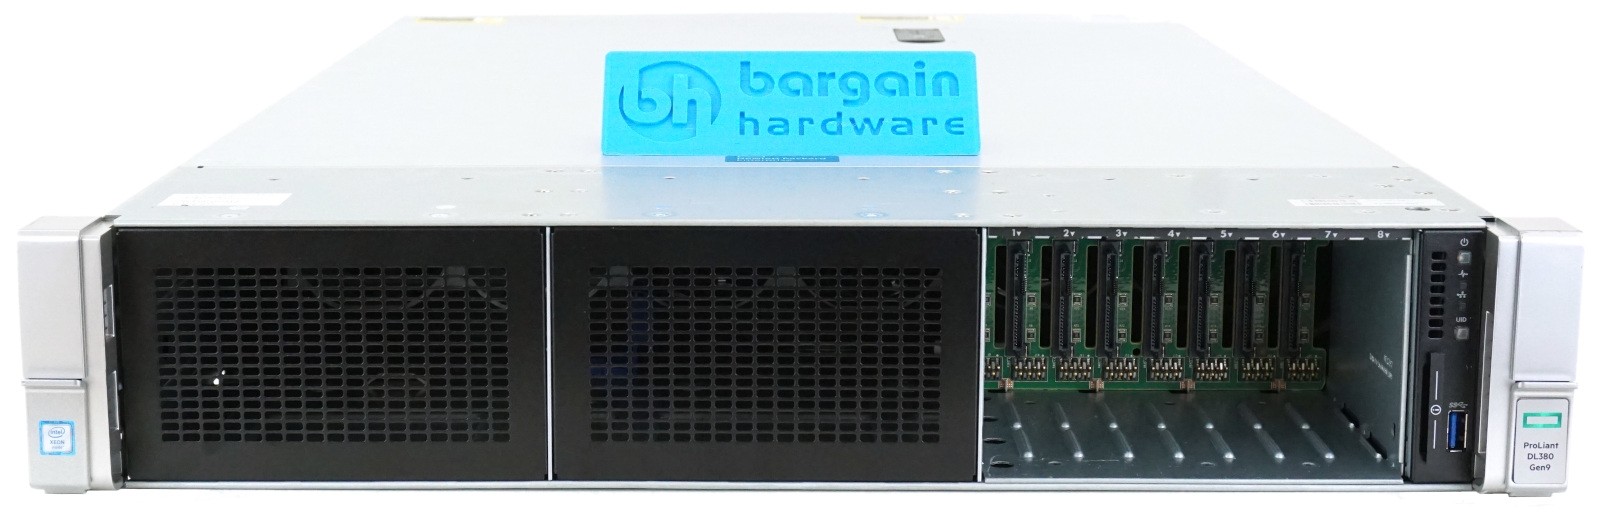 HP ProLiant DL380 Gen9 8-Bay 2U Rackmount Server | Configure-to-Order